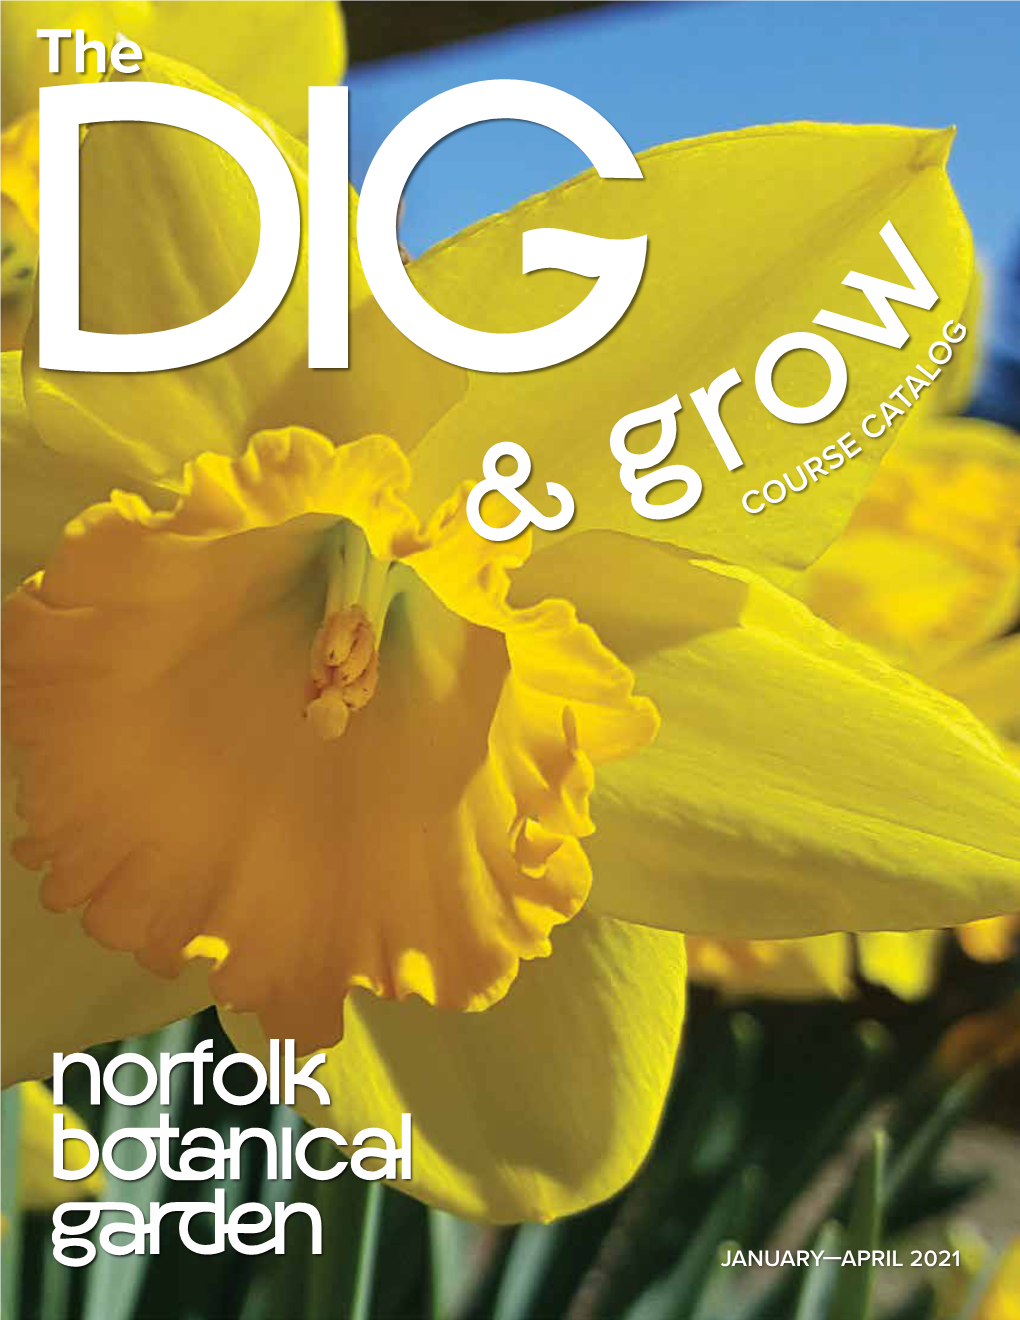 DIG Member Newsletter for Norfolk Botanical Garden, January Through